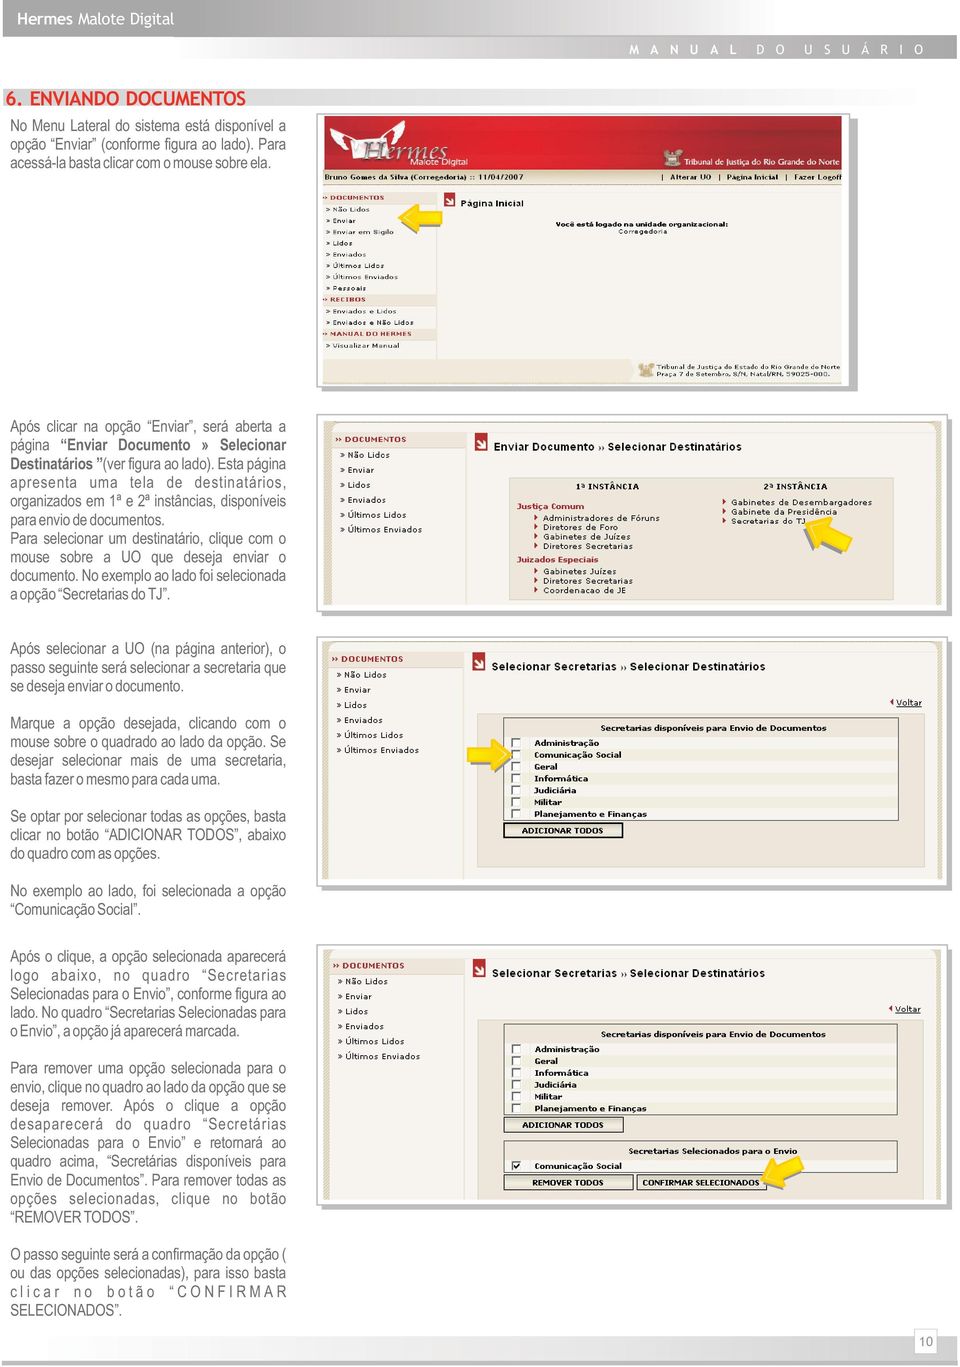 Esta página apresenta uma tela de destinatários, organizados em 1ª e 2ª instâncias, disponíveis para envio de documentos.